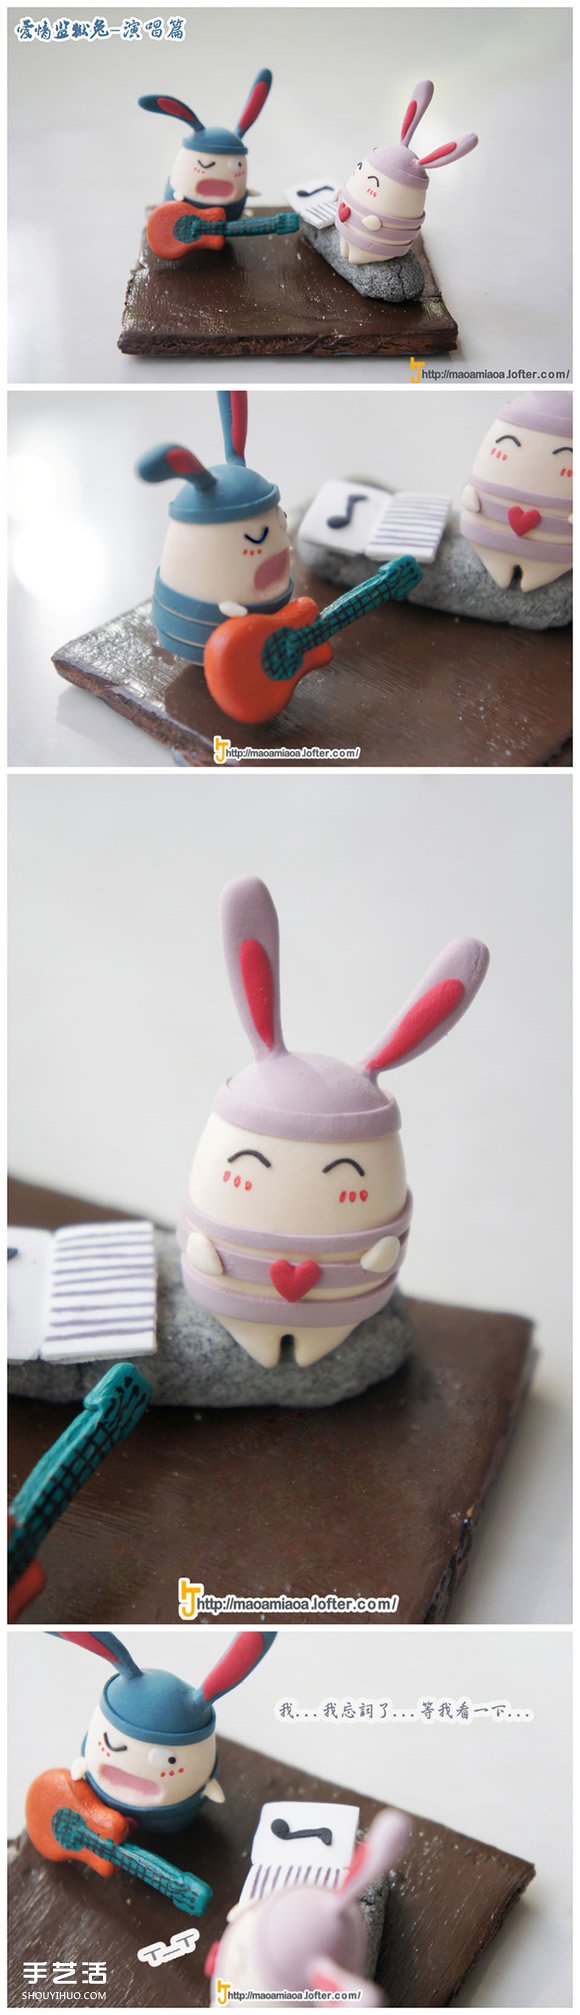 可爱兔子玩偶粘土DIY 爱情监狱兔粘土制作